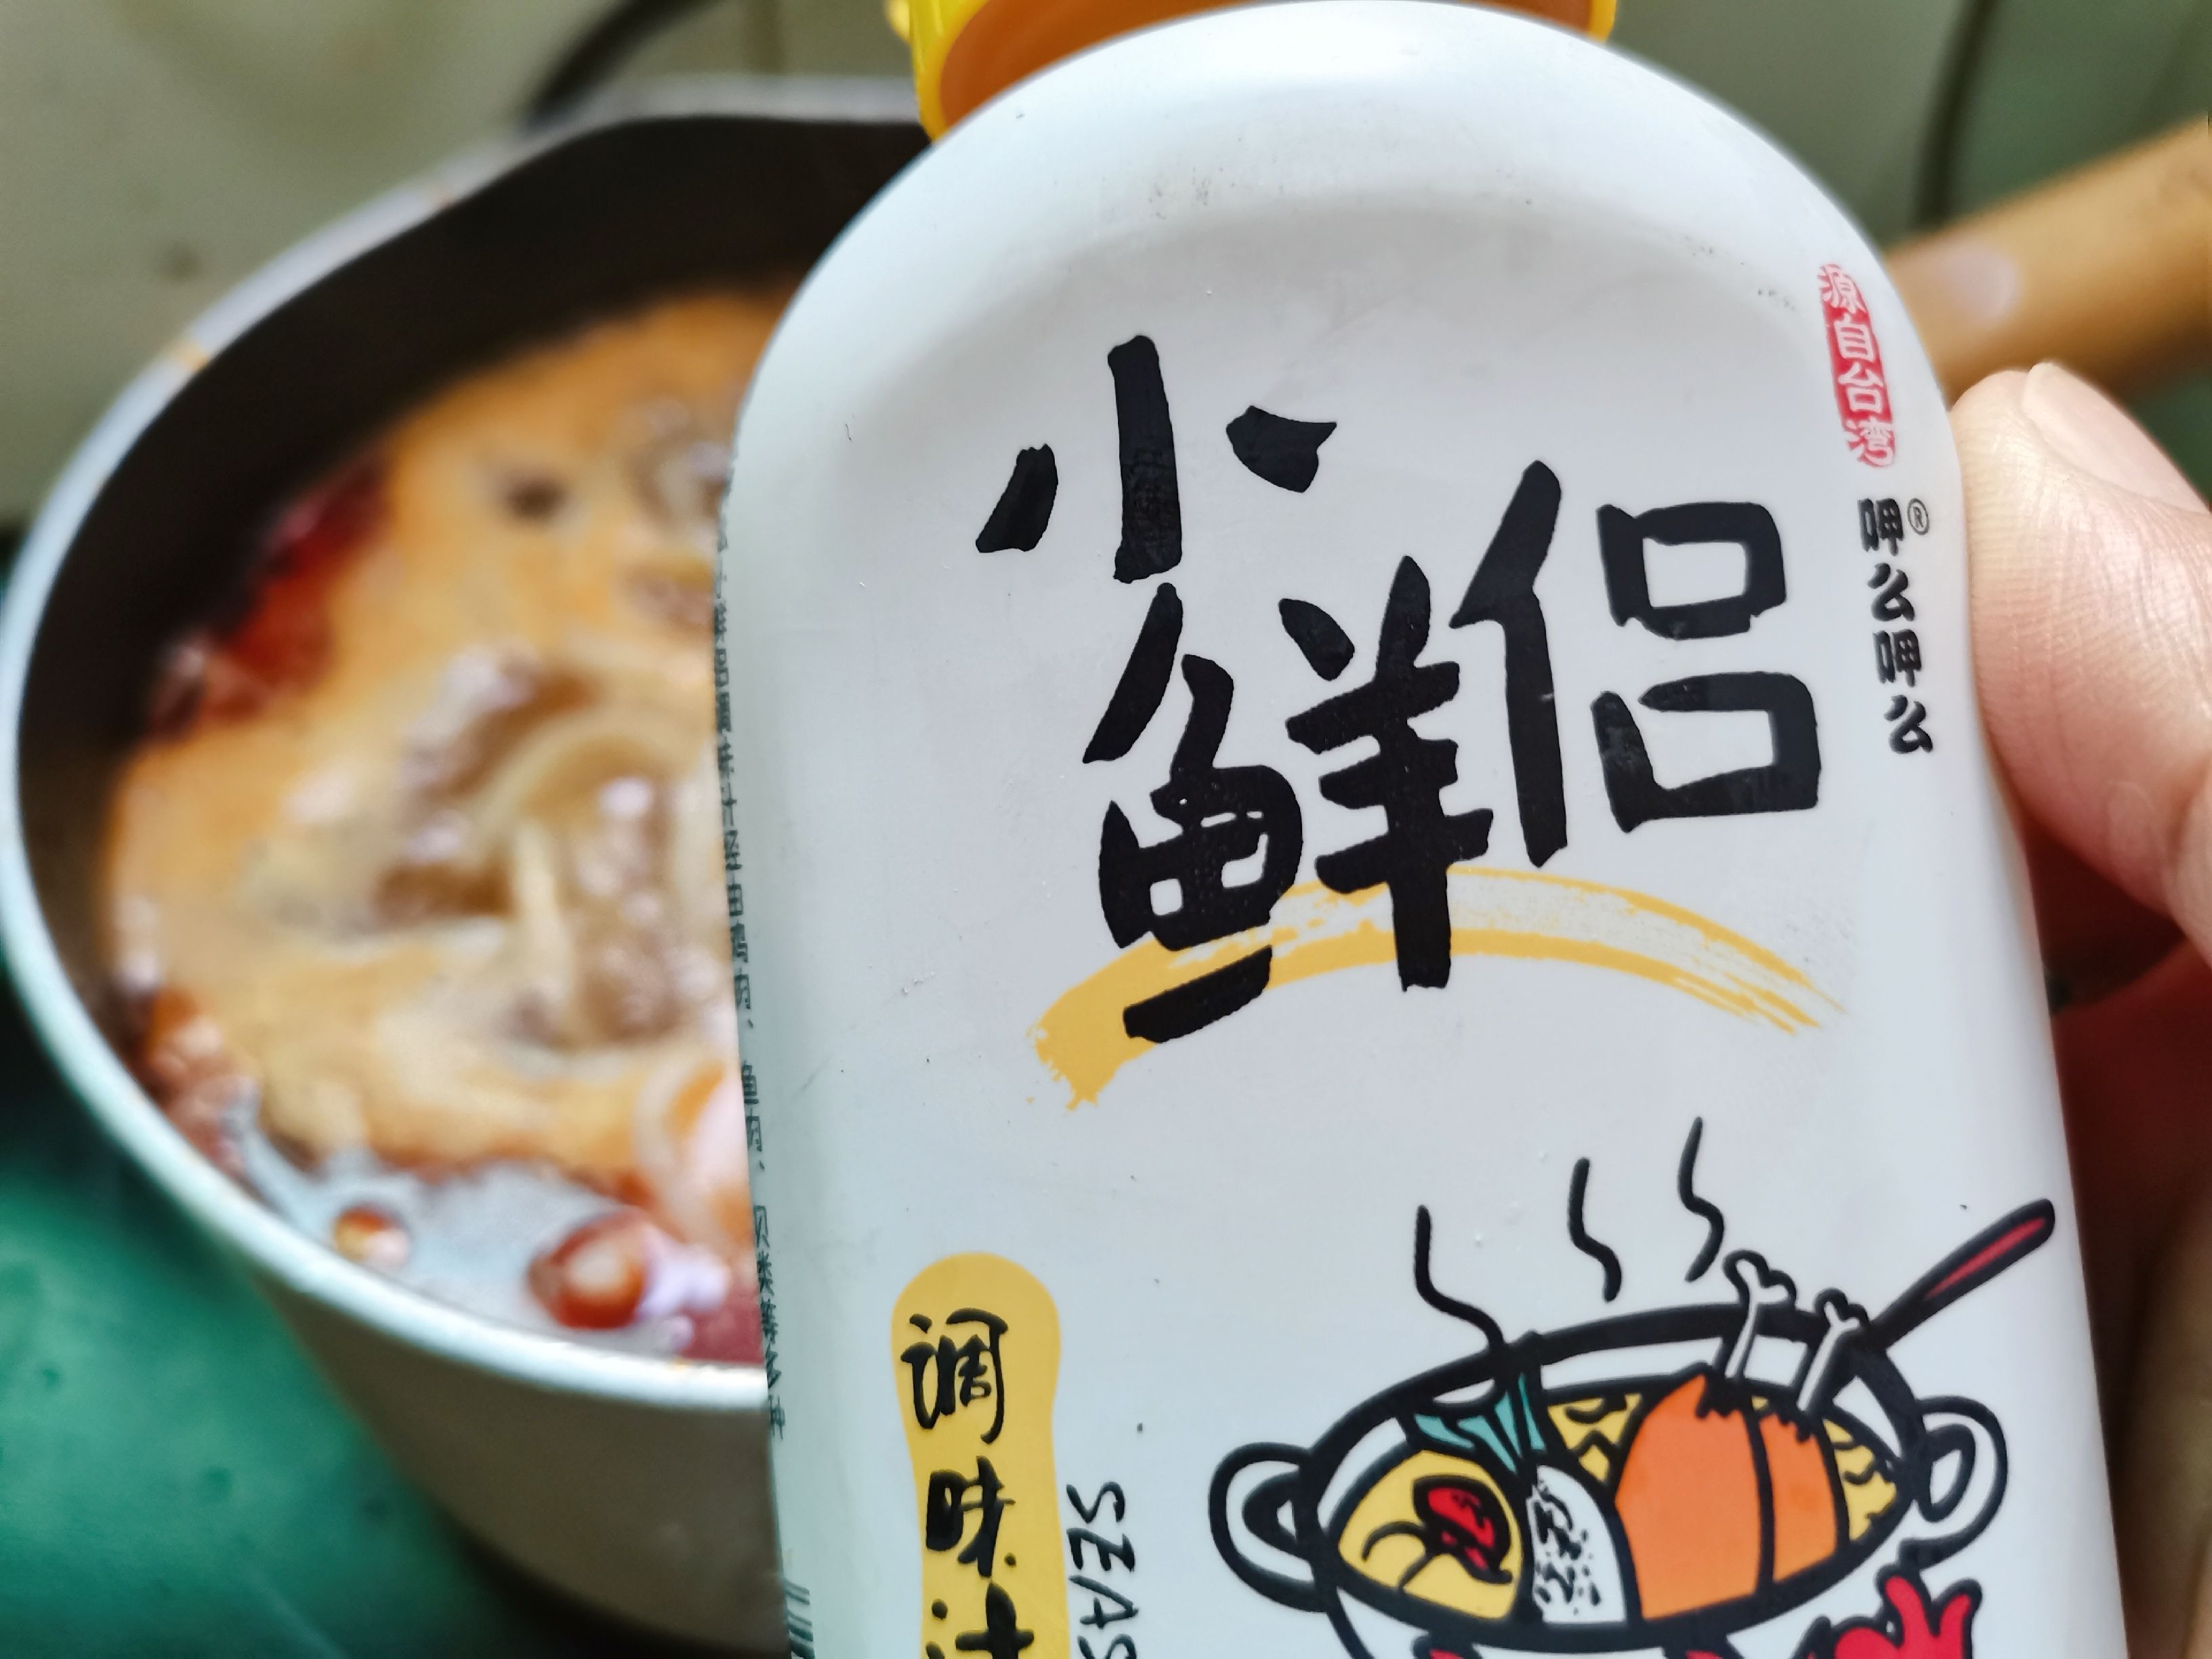 Spicy Udon Noodles recipe